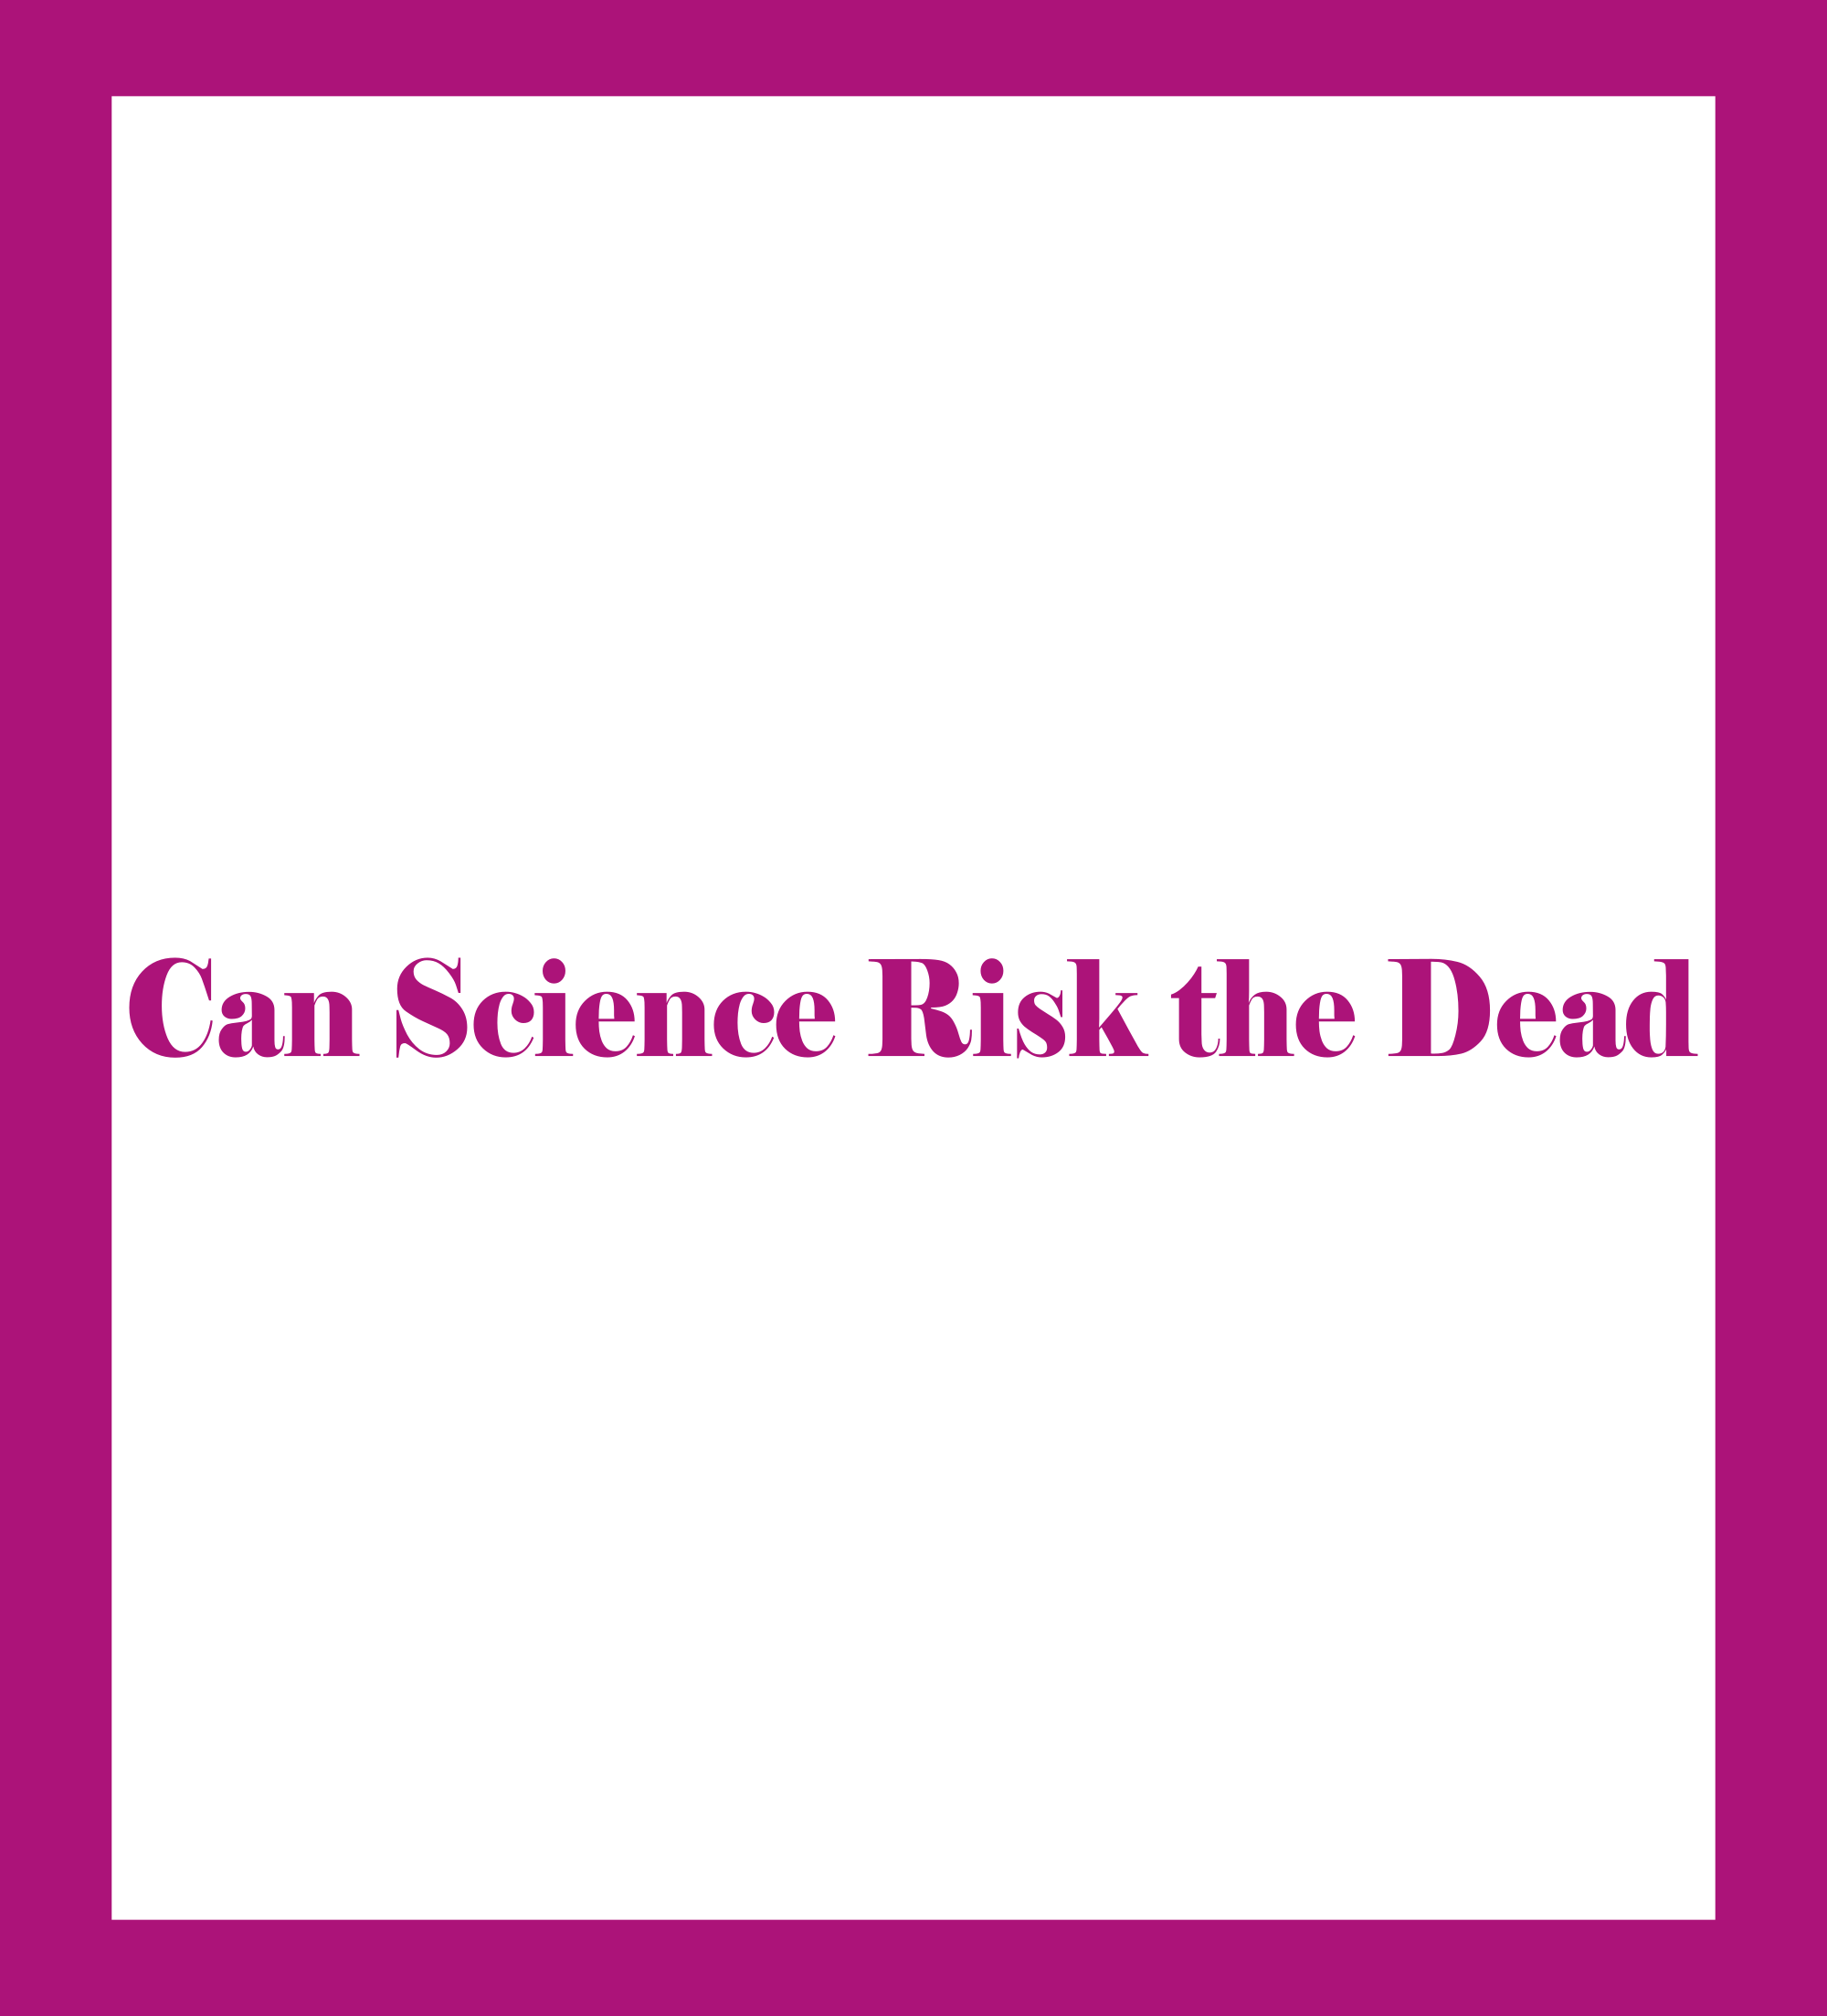 Caratula de Can Science Risk the Dead (Puede la ciencia resucitar a los muertos) 